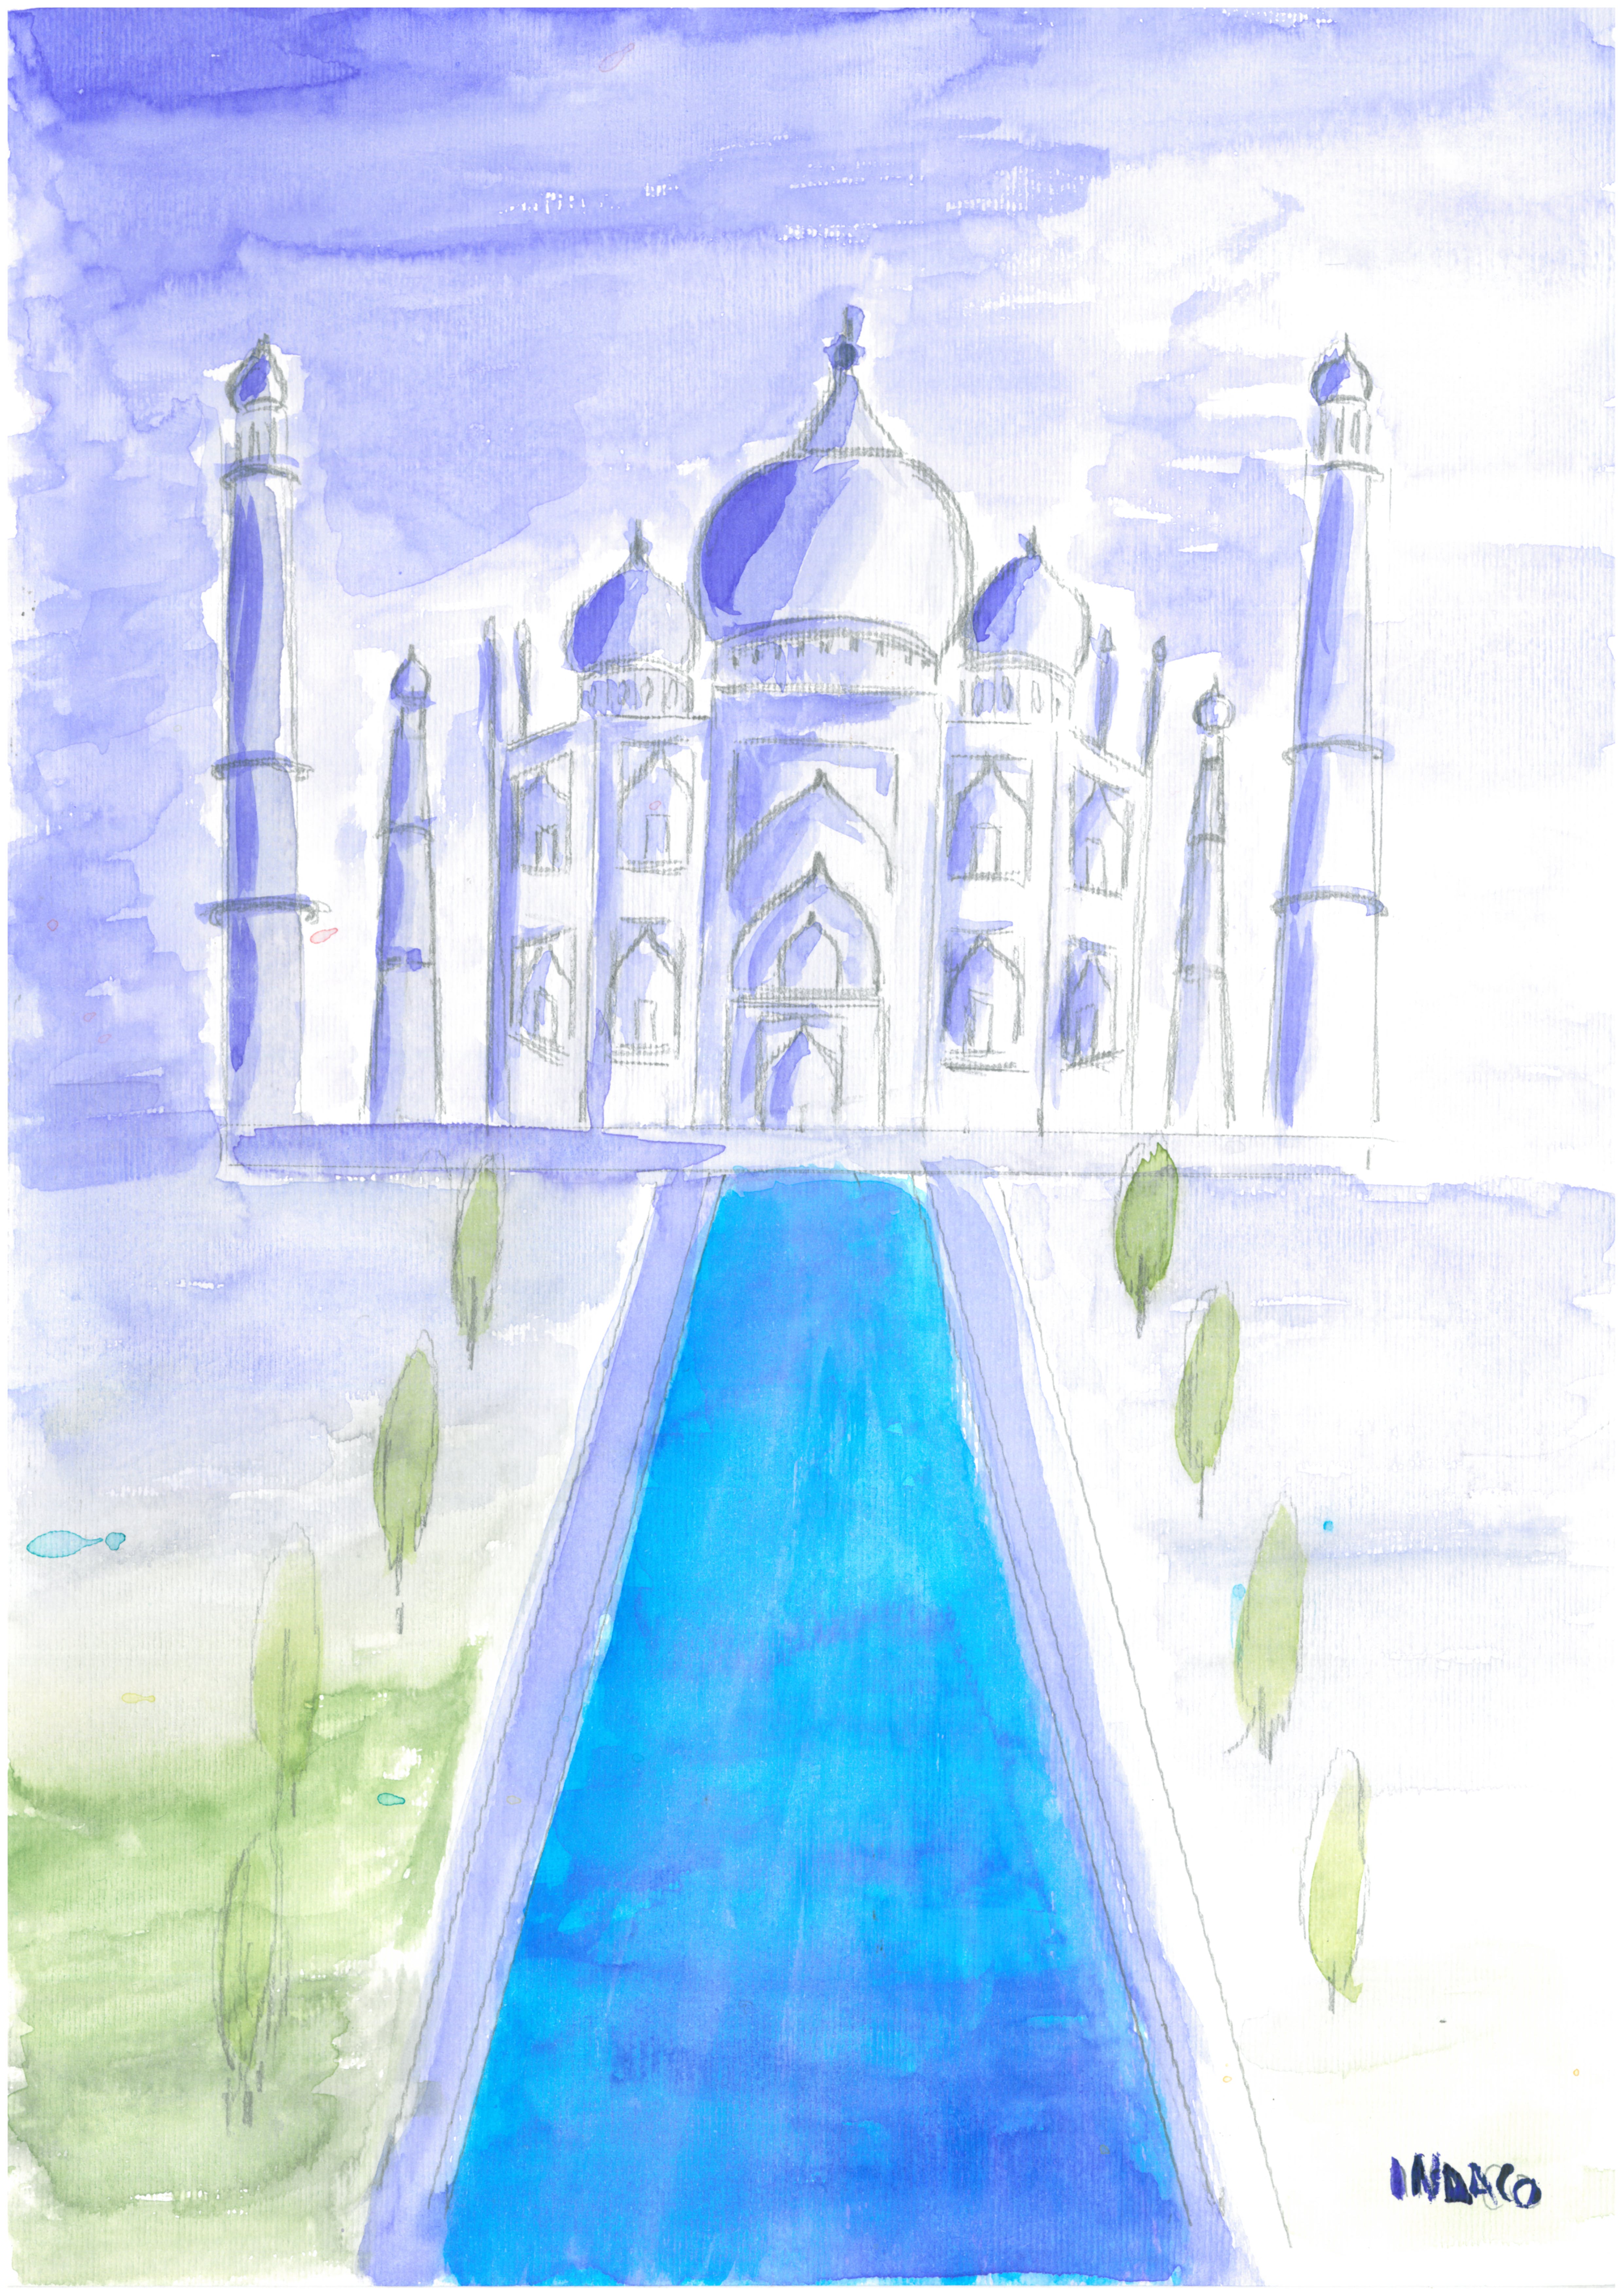 Veduta frontale del Taj Mahal, immerso in un'atmosfera dai toni dell'indaco che si riflettono sulla bianca facciata. Davanti all'ingresso principale un ampio canale d'acqua, costeggiato da alberelli simmetricamente posizionati.